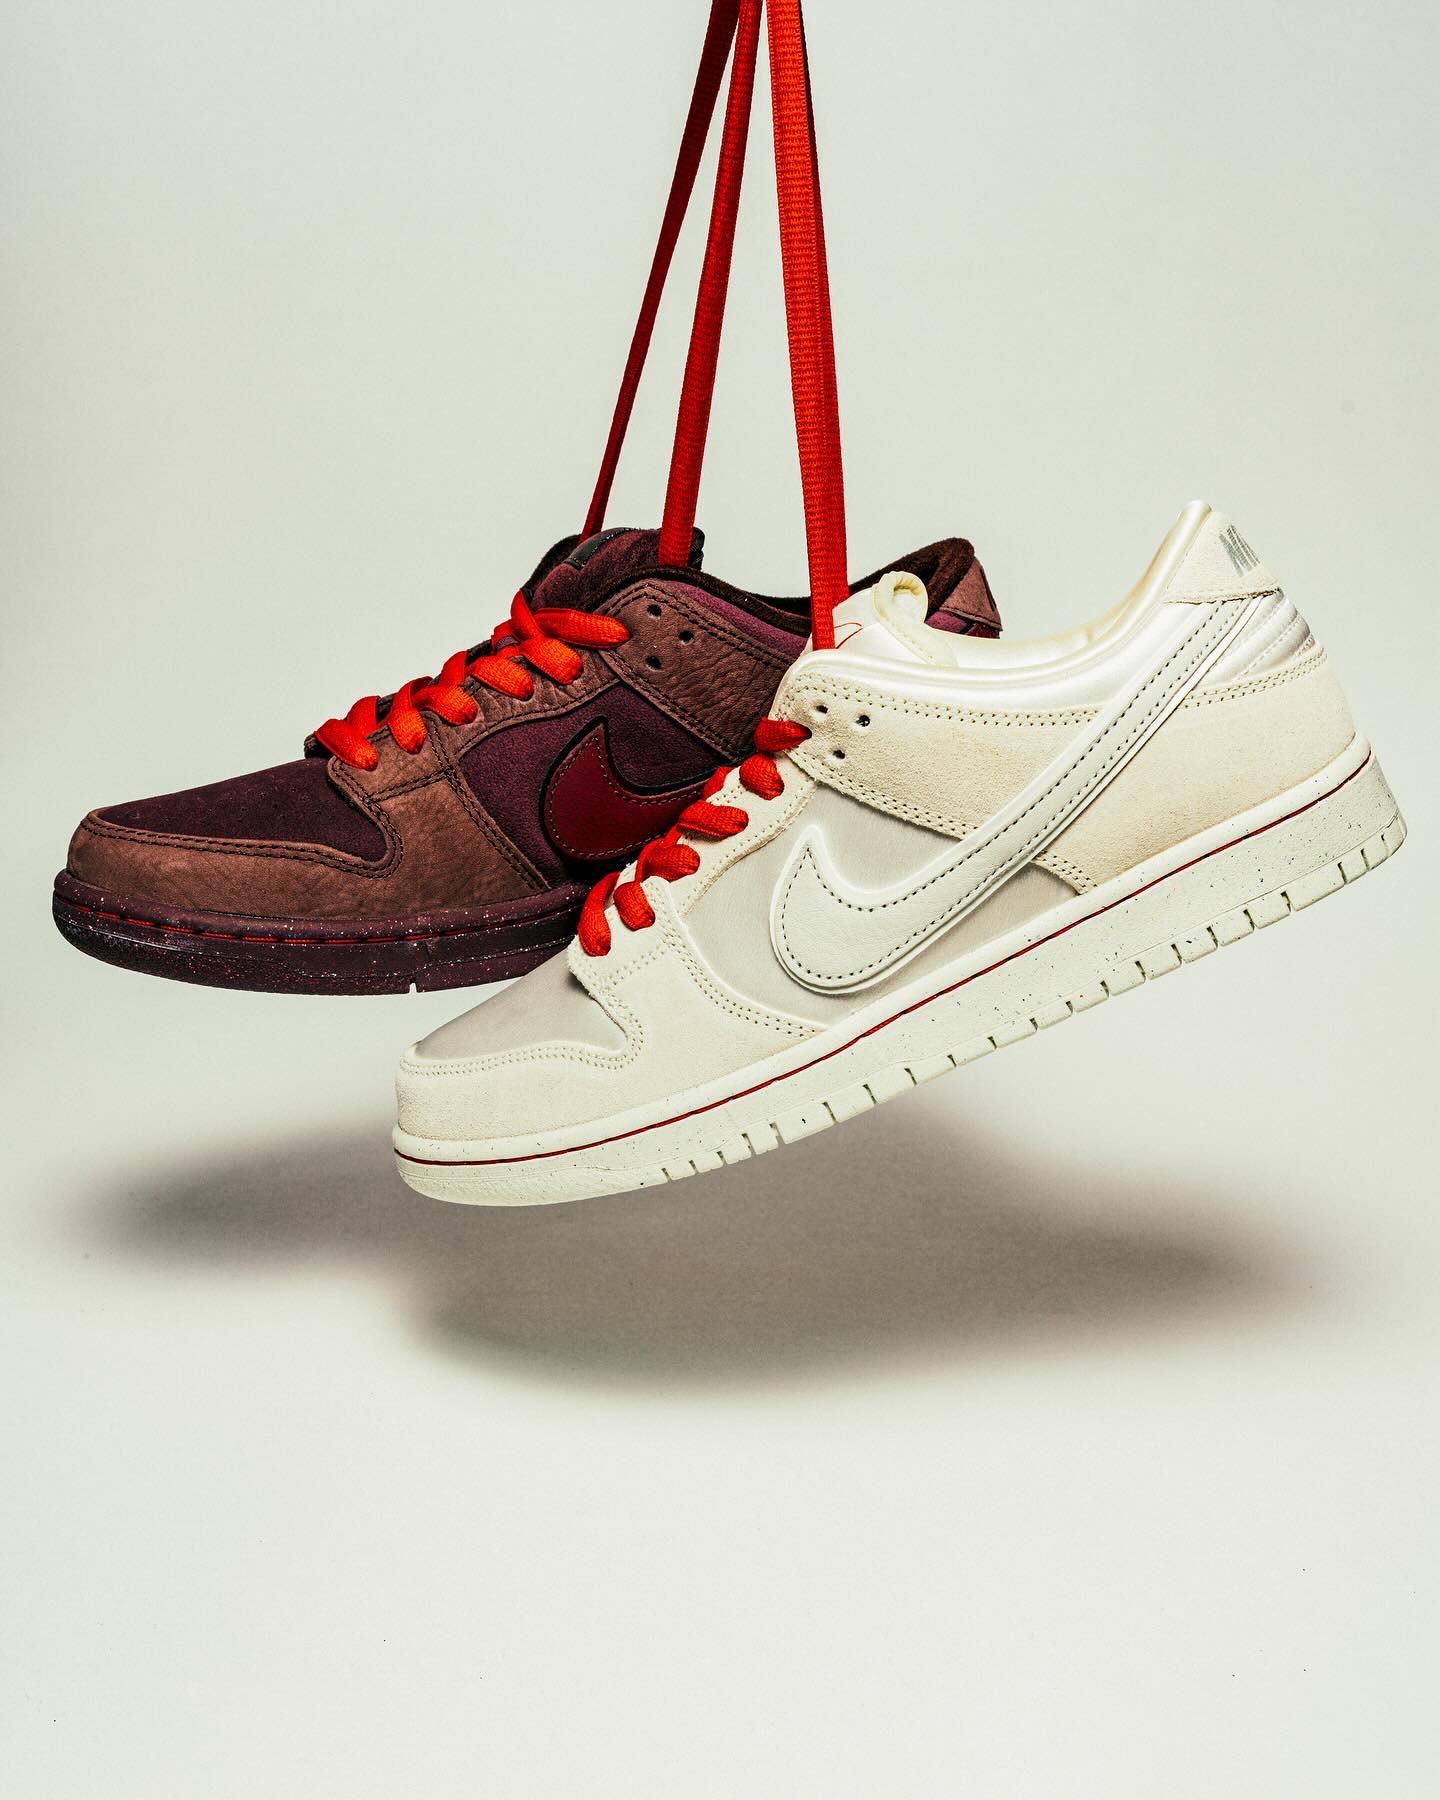 2月12日(月)発売Nike SB "City of Love" Collection運命の赤い糸で結ばれたバーガンディーとホワイトの対照的な美しさが交差するDunk Collectionがまもなく発売。パリの街からインスパイアされた対照的な2対のDunkが赤い糸で結ばれたスケートの歴史と未来の調和の物語を紡ぎます。 @kaisei_yamaguchi販売方法に関してはプロフィールリンク先のブログをご確認下さい。※浦安ストアでの販売はございません。※販売足数、入荷サイズ、発売前のご予約など販売に関する事前お問い合わせはご遠慮下さい。※no overseas shipment.#cityoflove#nikesb@nikesbdj#instantskateshop#instantskateboards